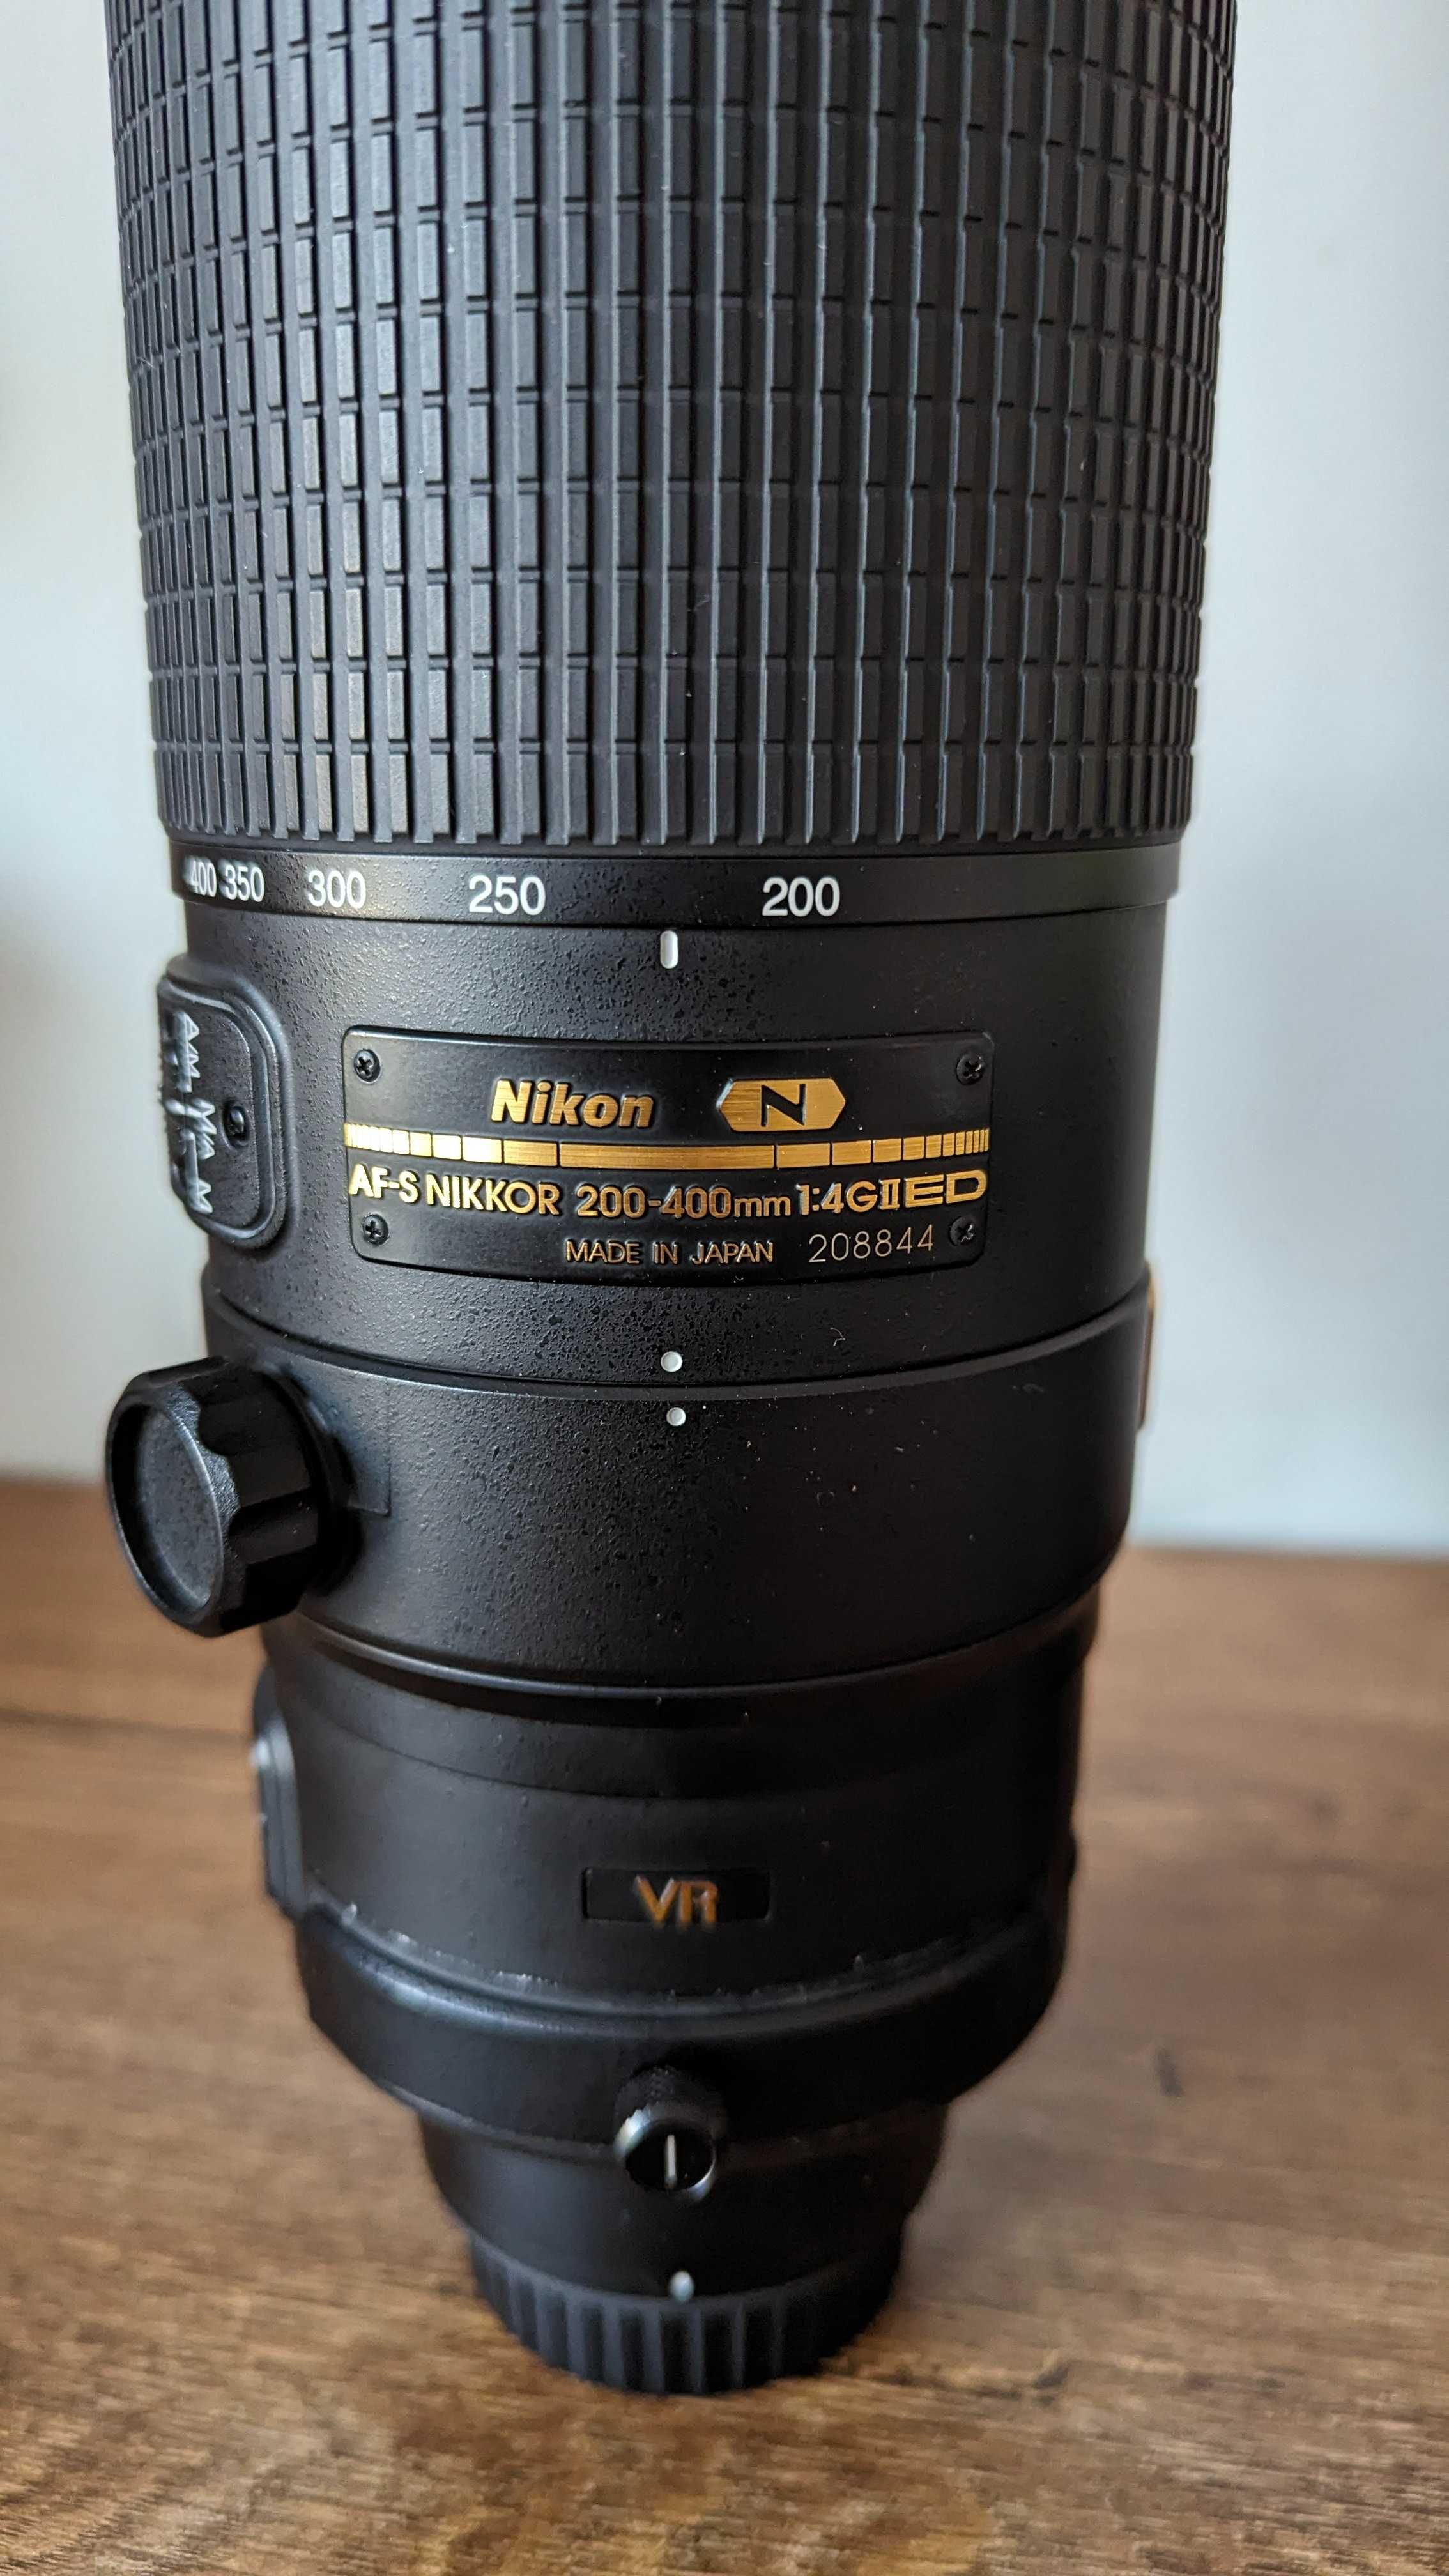 Nikon Nikkor AF-S 200-400mm f1:4G II ED N VR II